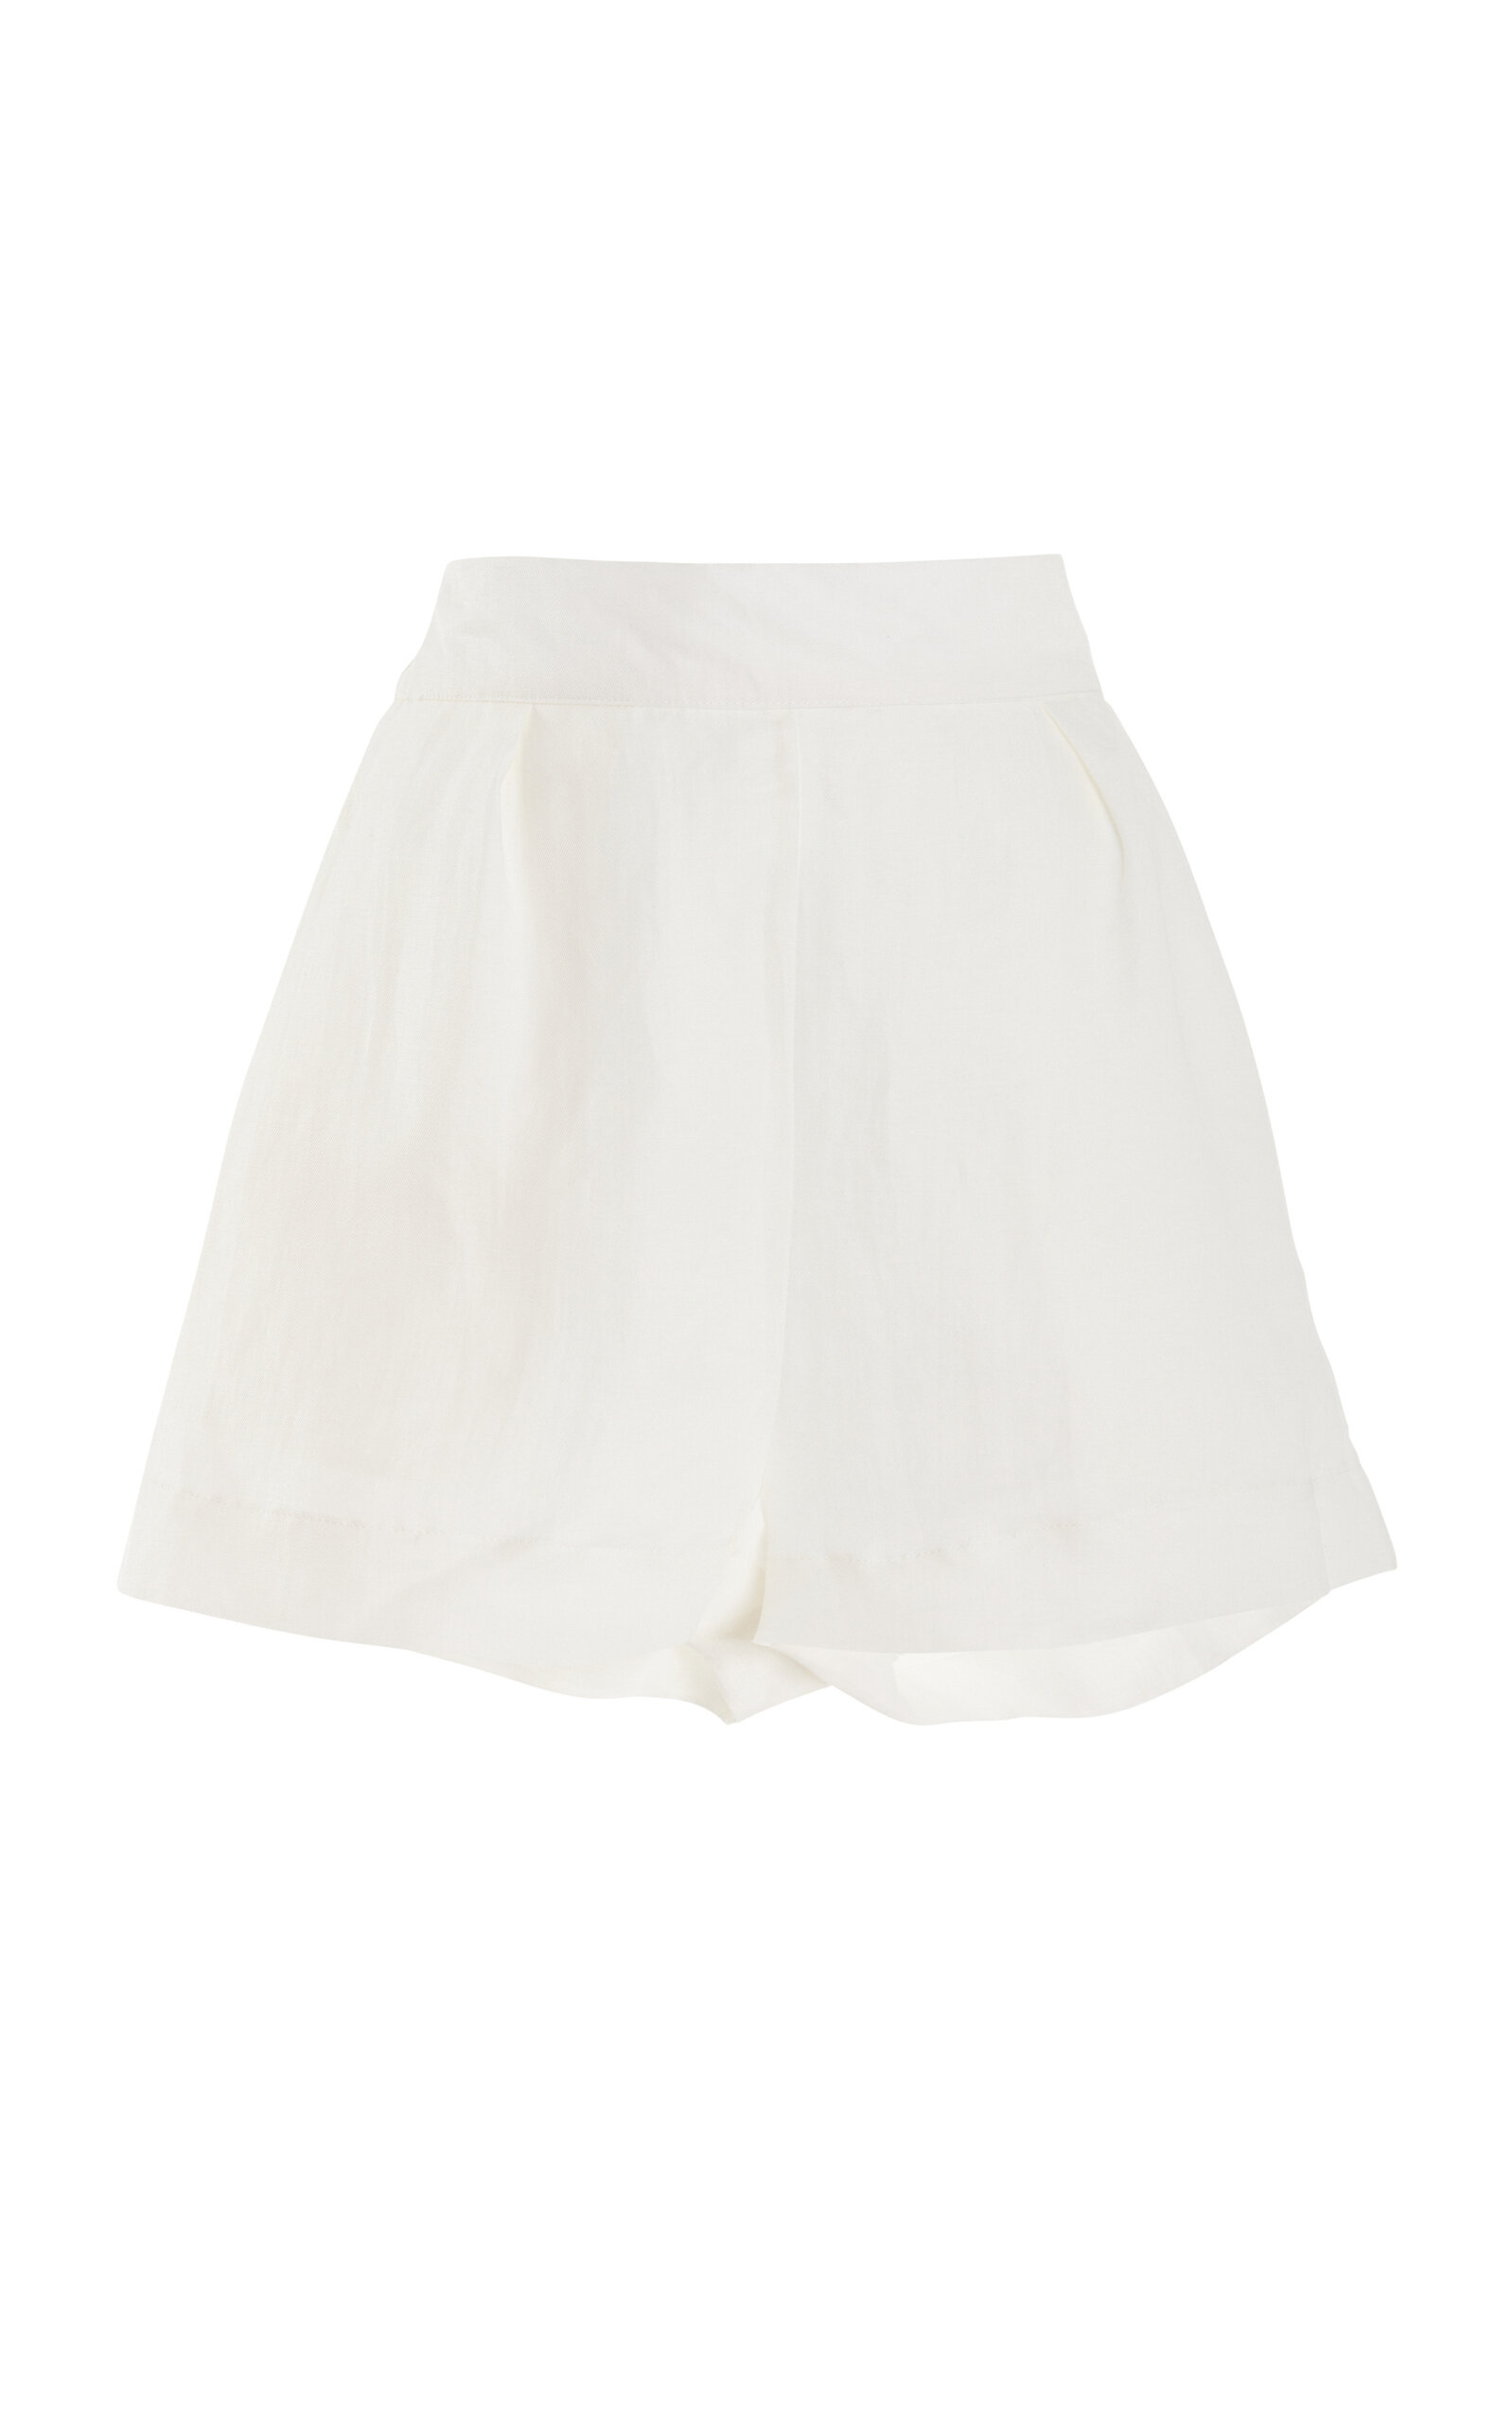 Anemos Women's The High-Waisted Linen-Blend Short Shorts